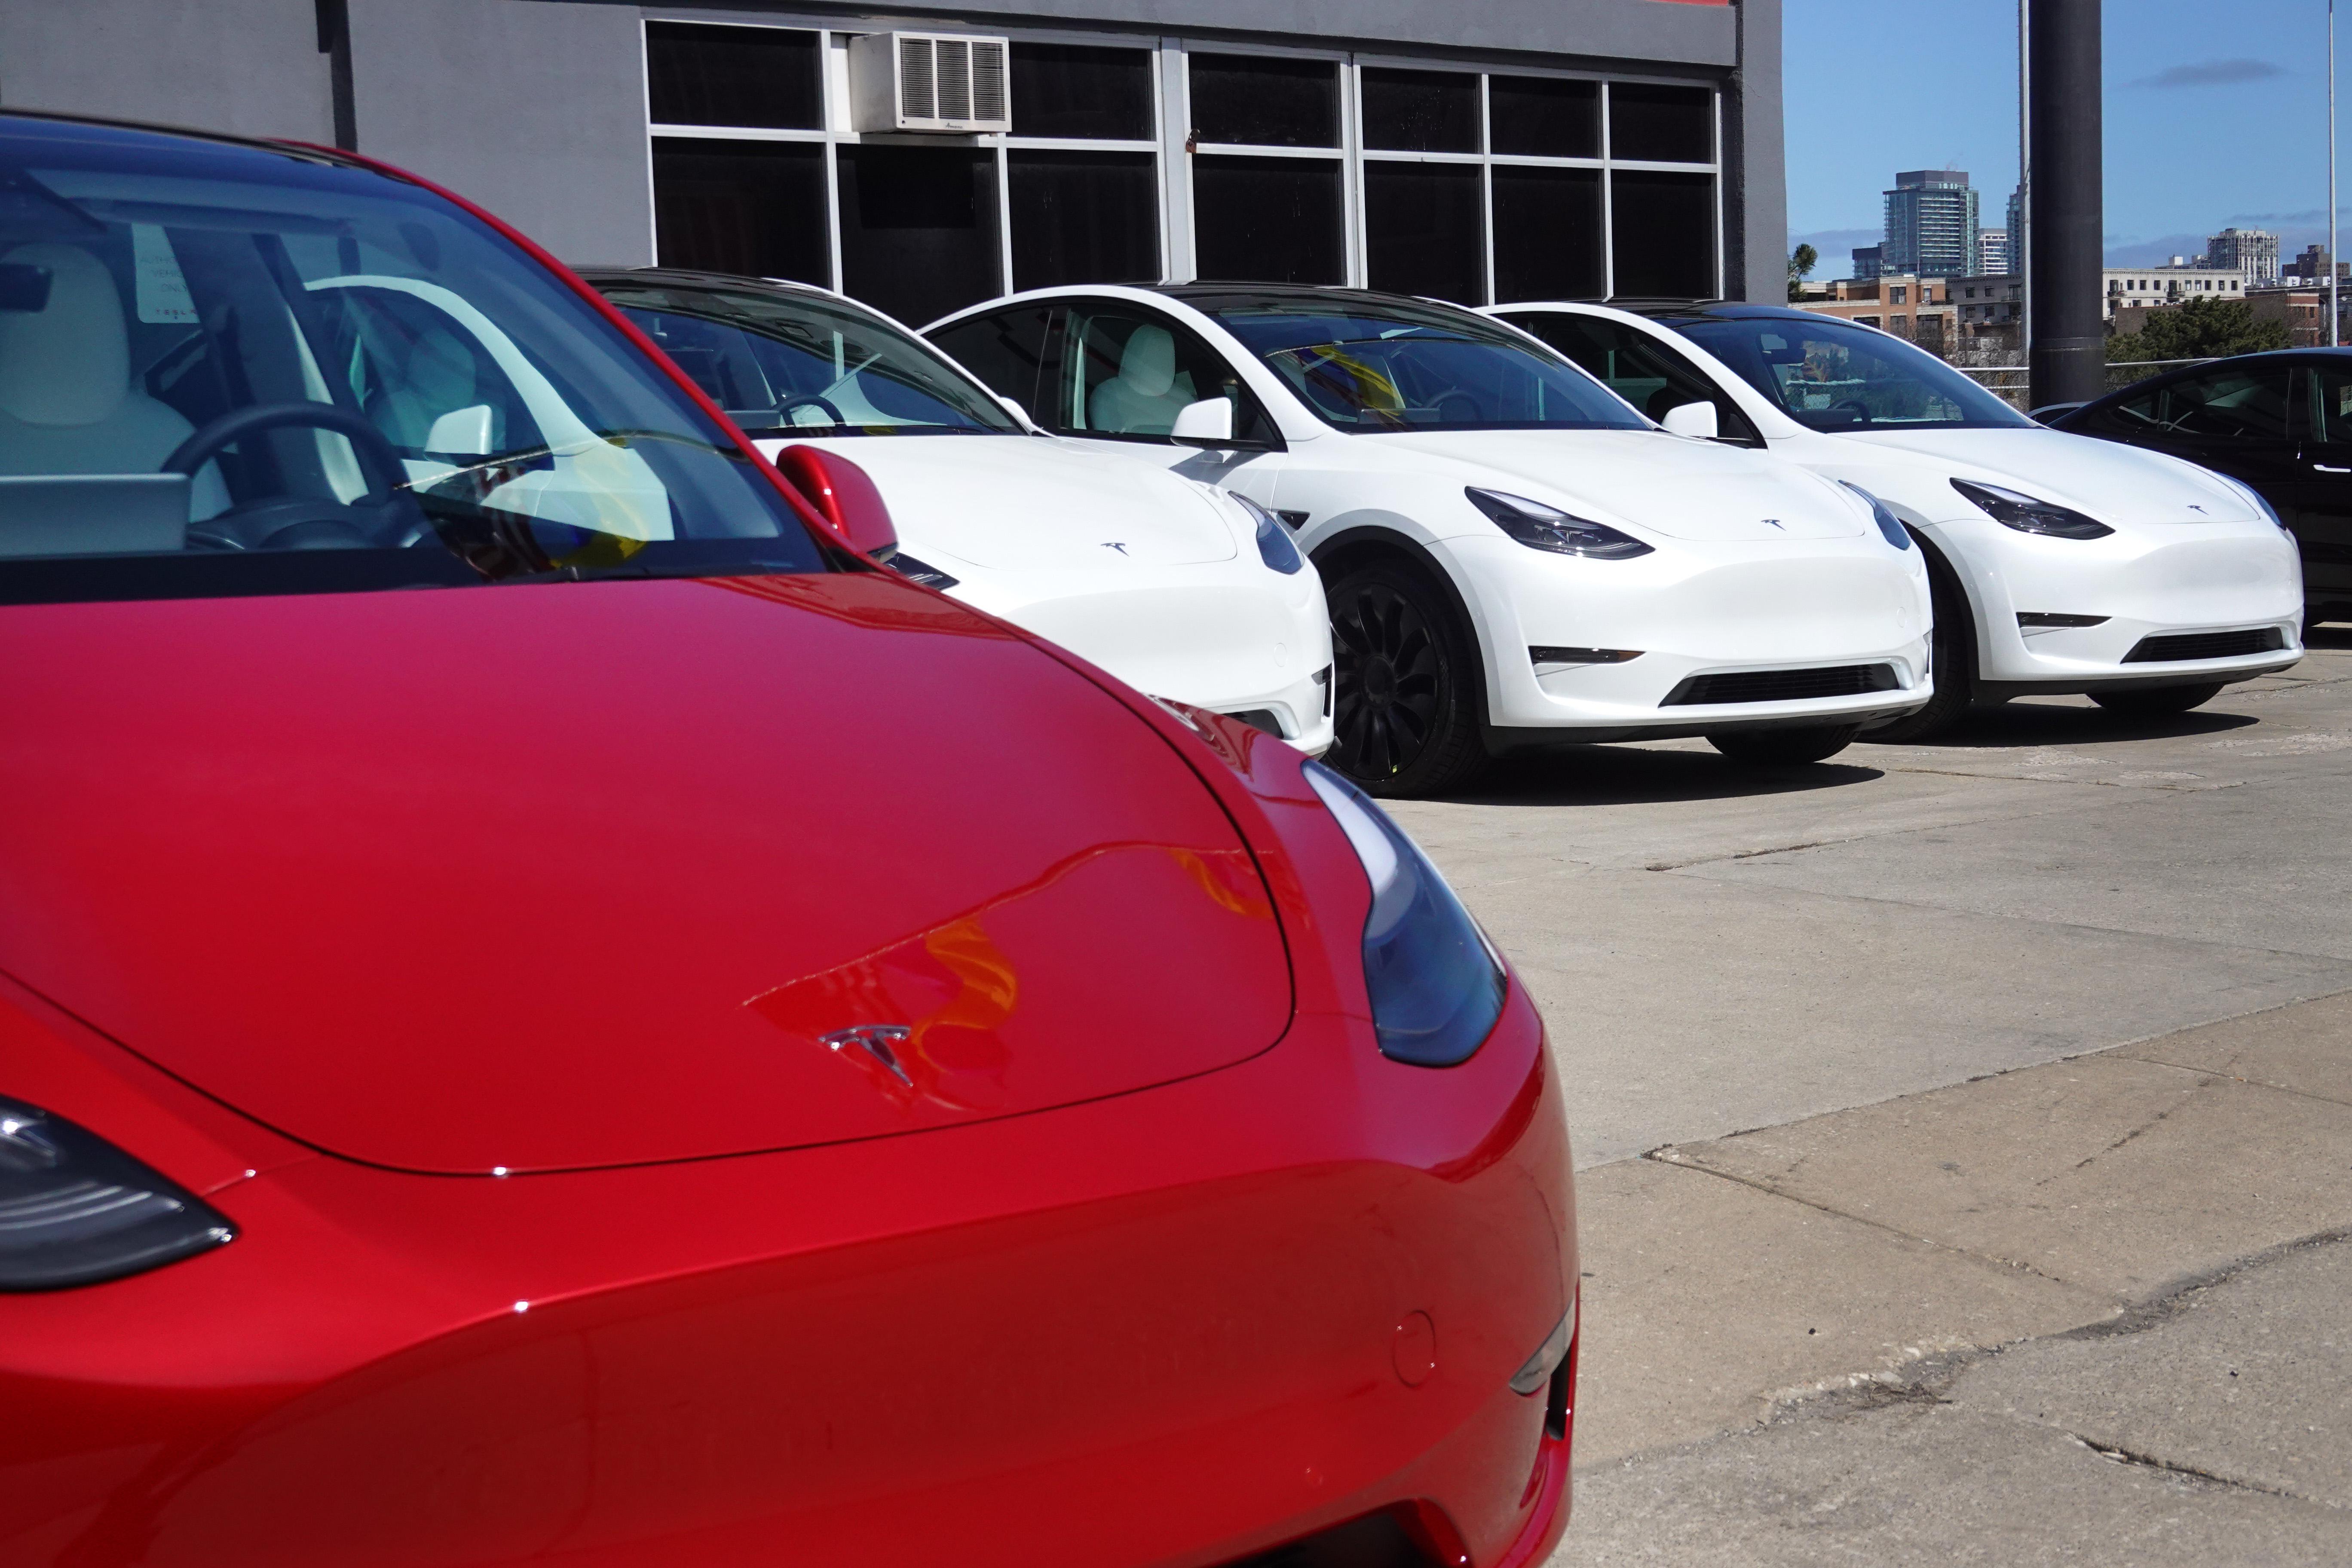 Tesla cars seen in a dealership lot